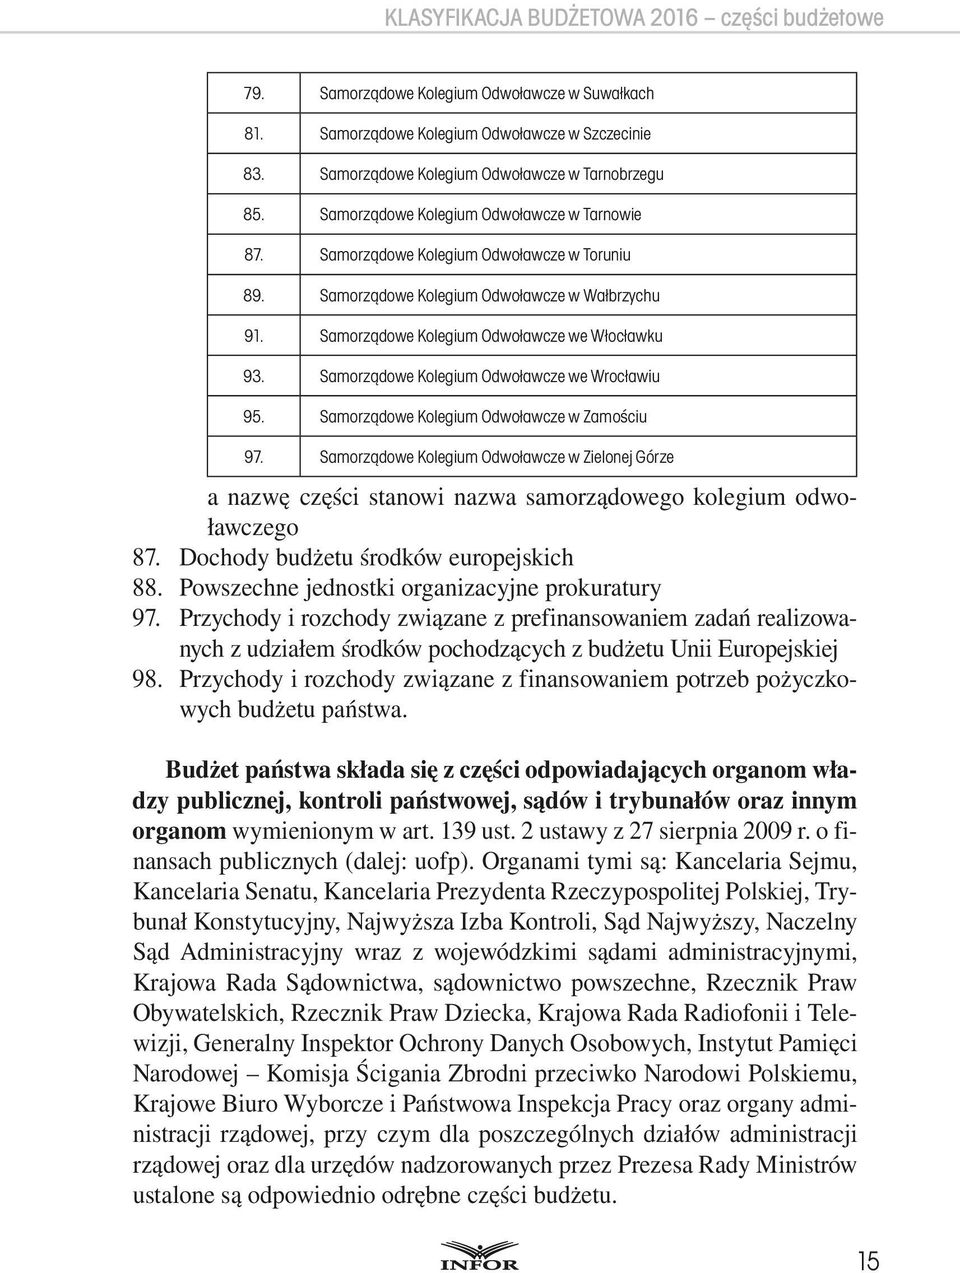 Samorządowe Kolegium Odwoławcze we Wrocławiu 95. Samorządowe Kolegium Odwoławcze w Zamościu 97.